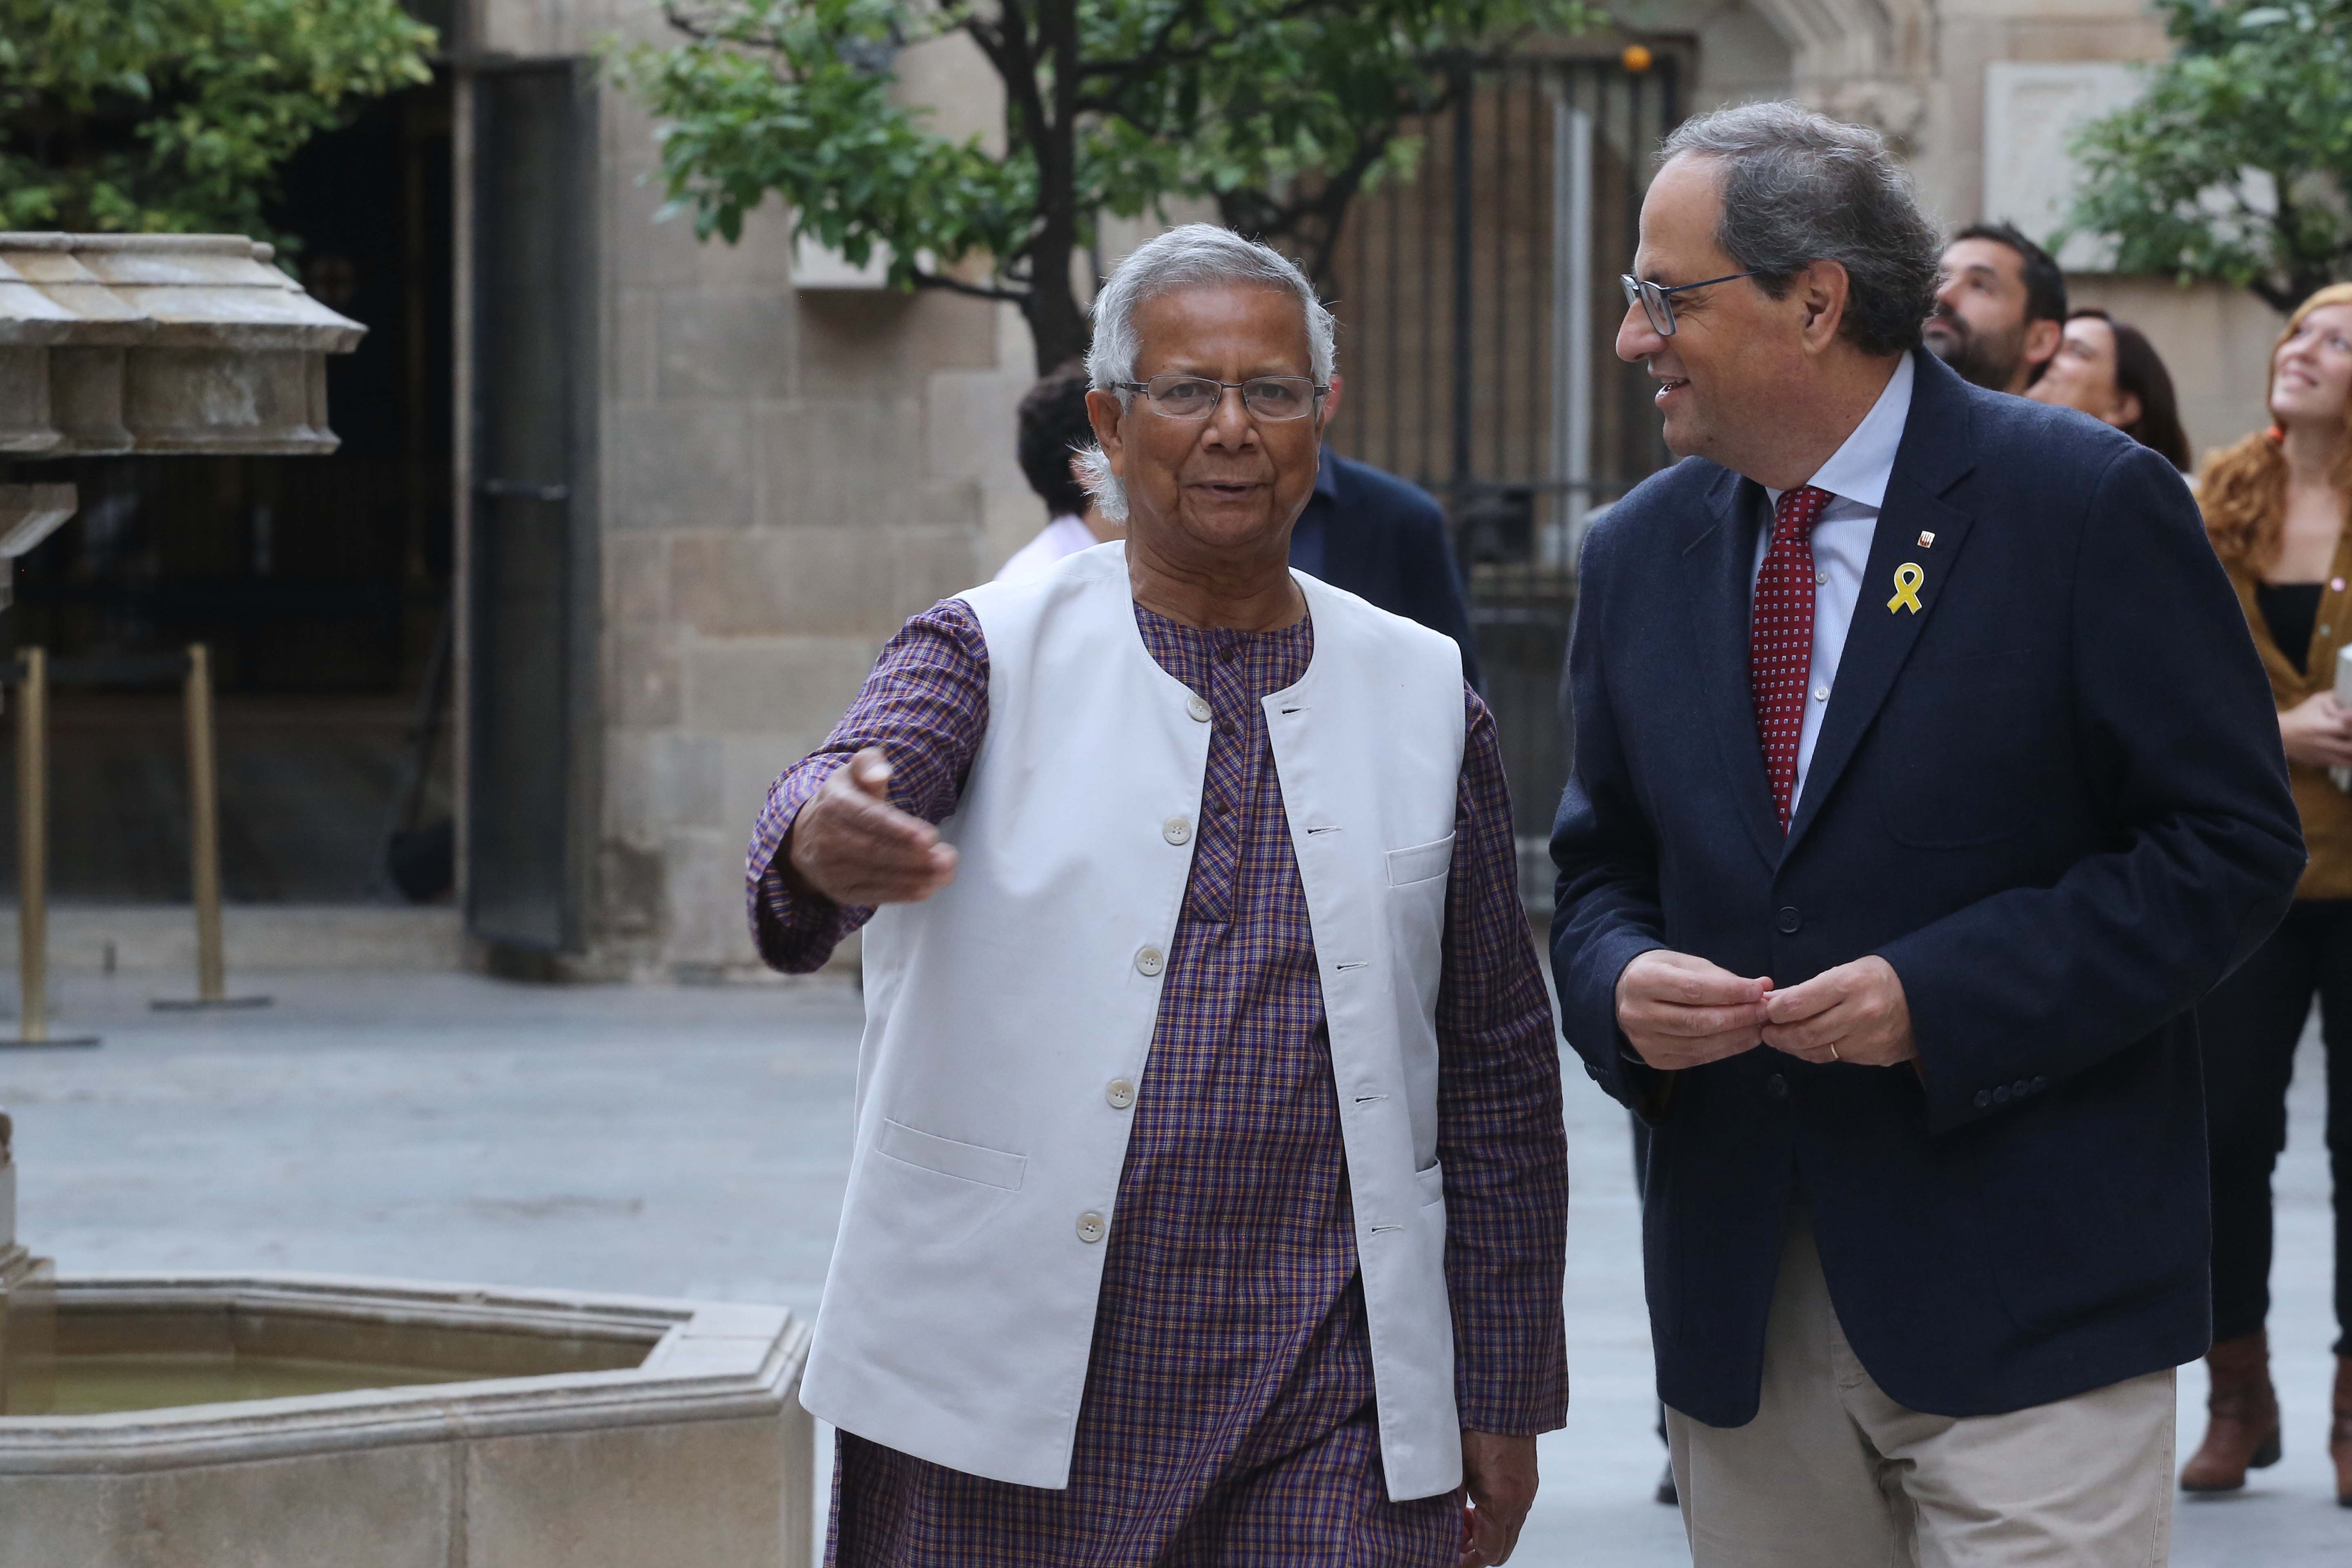 El Nobel Yunus pide una "solución pacífica" a Catalunya delante de Torra